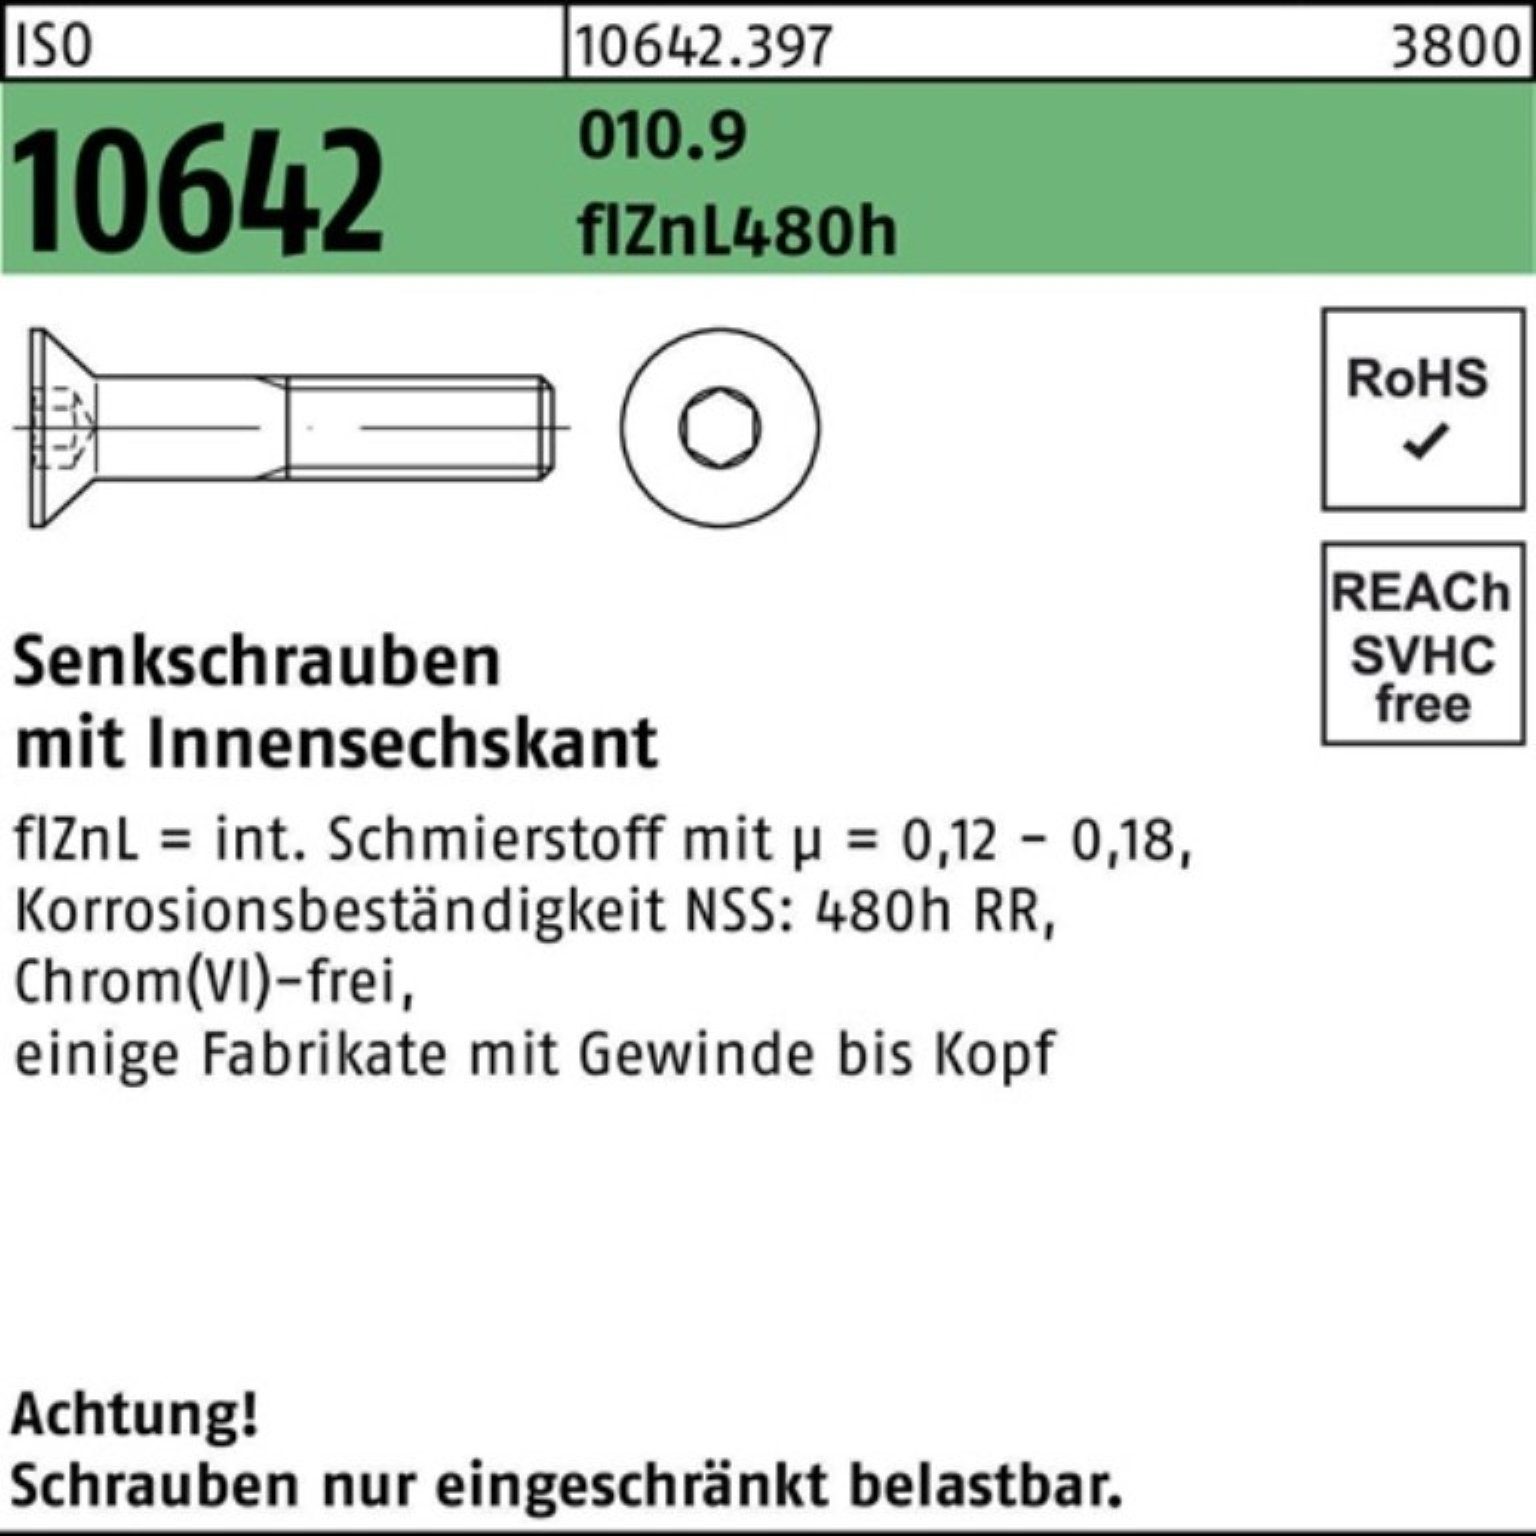 Reyher Senkschraube 100er Pack Senkschraube ISO 10642 Innen-6kt M10x60 010.9 flZnL 480h zi